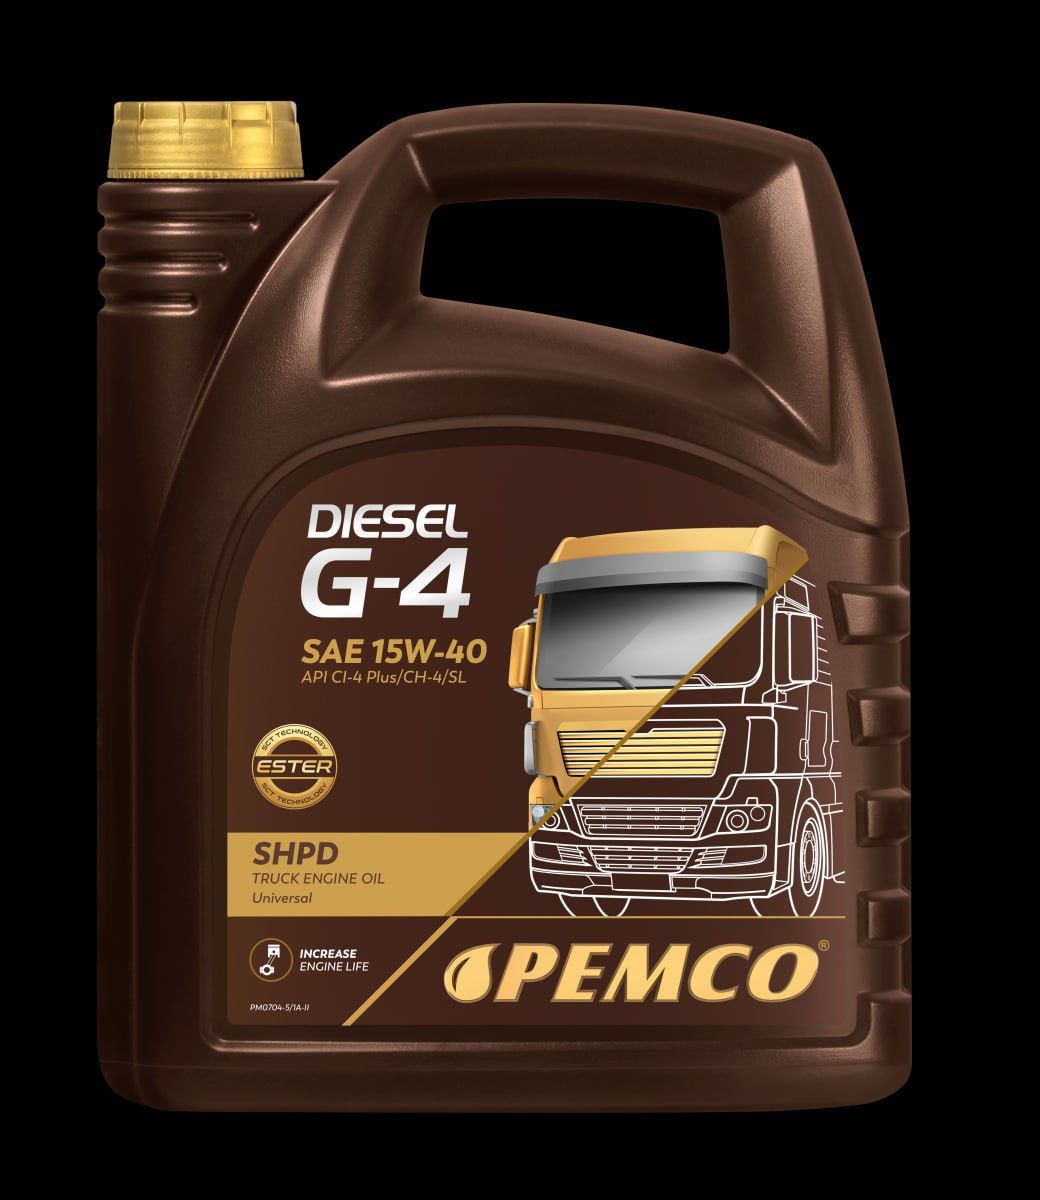 Дизельное масло Pemco G4 SHPD 15w40